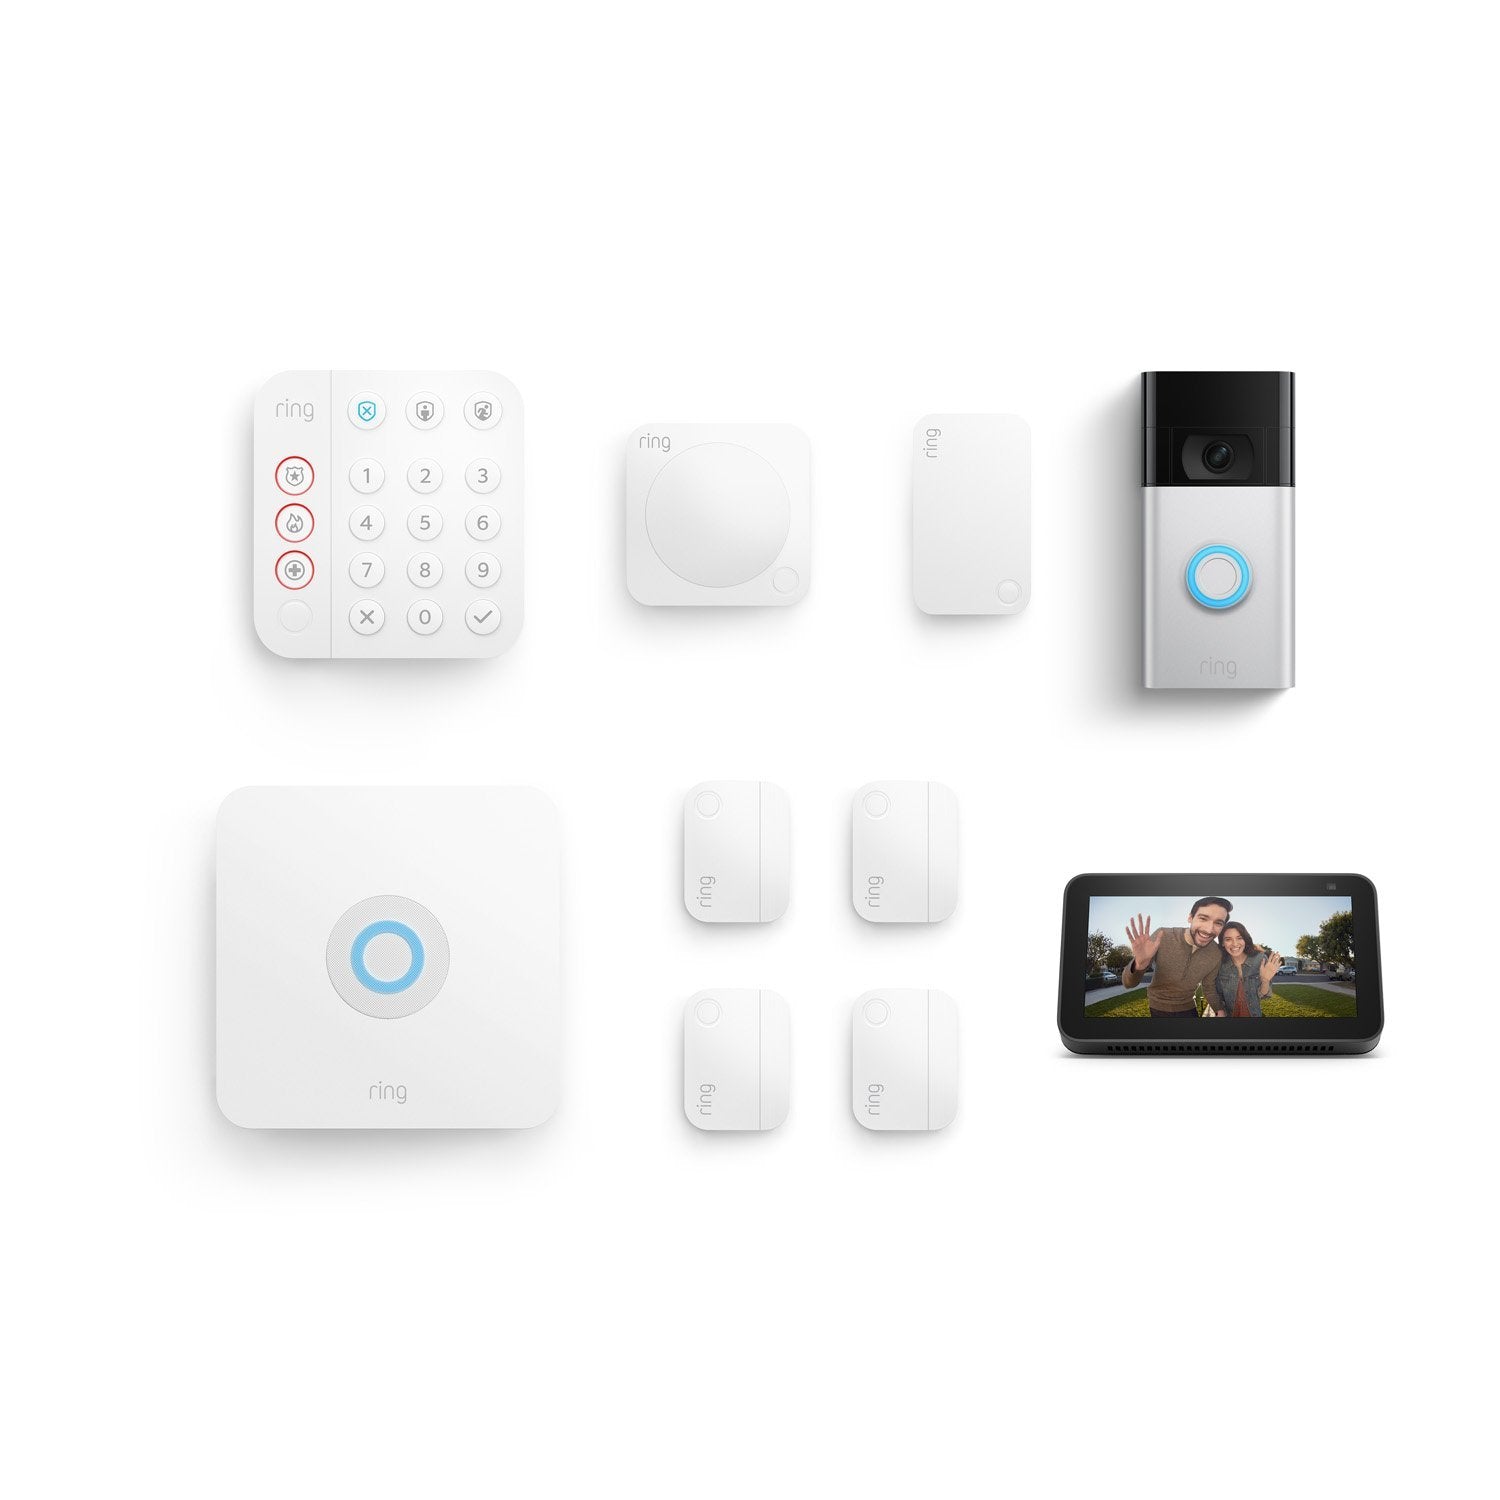 8-Piece Alarm Security Kit + Video Doorbell with Echo Show 5 - Satin Nickel